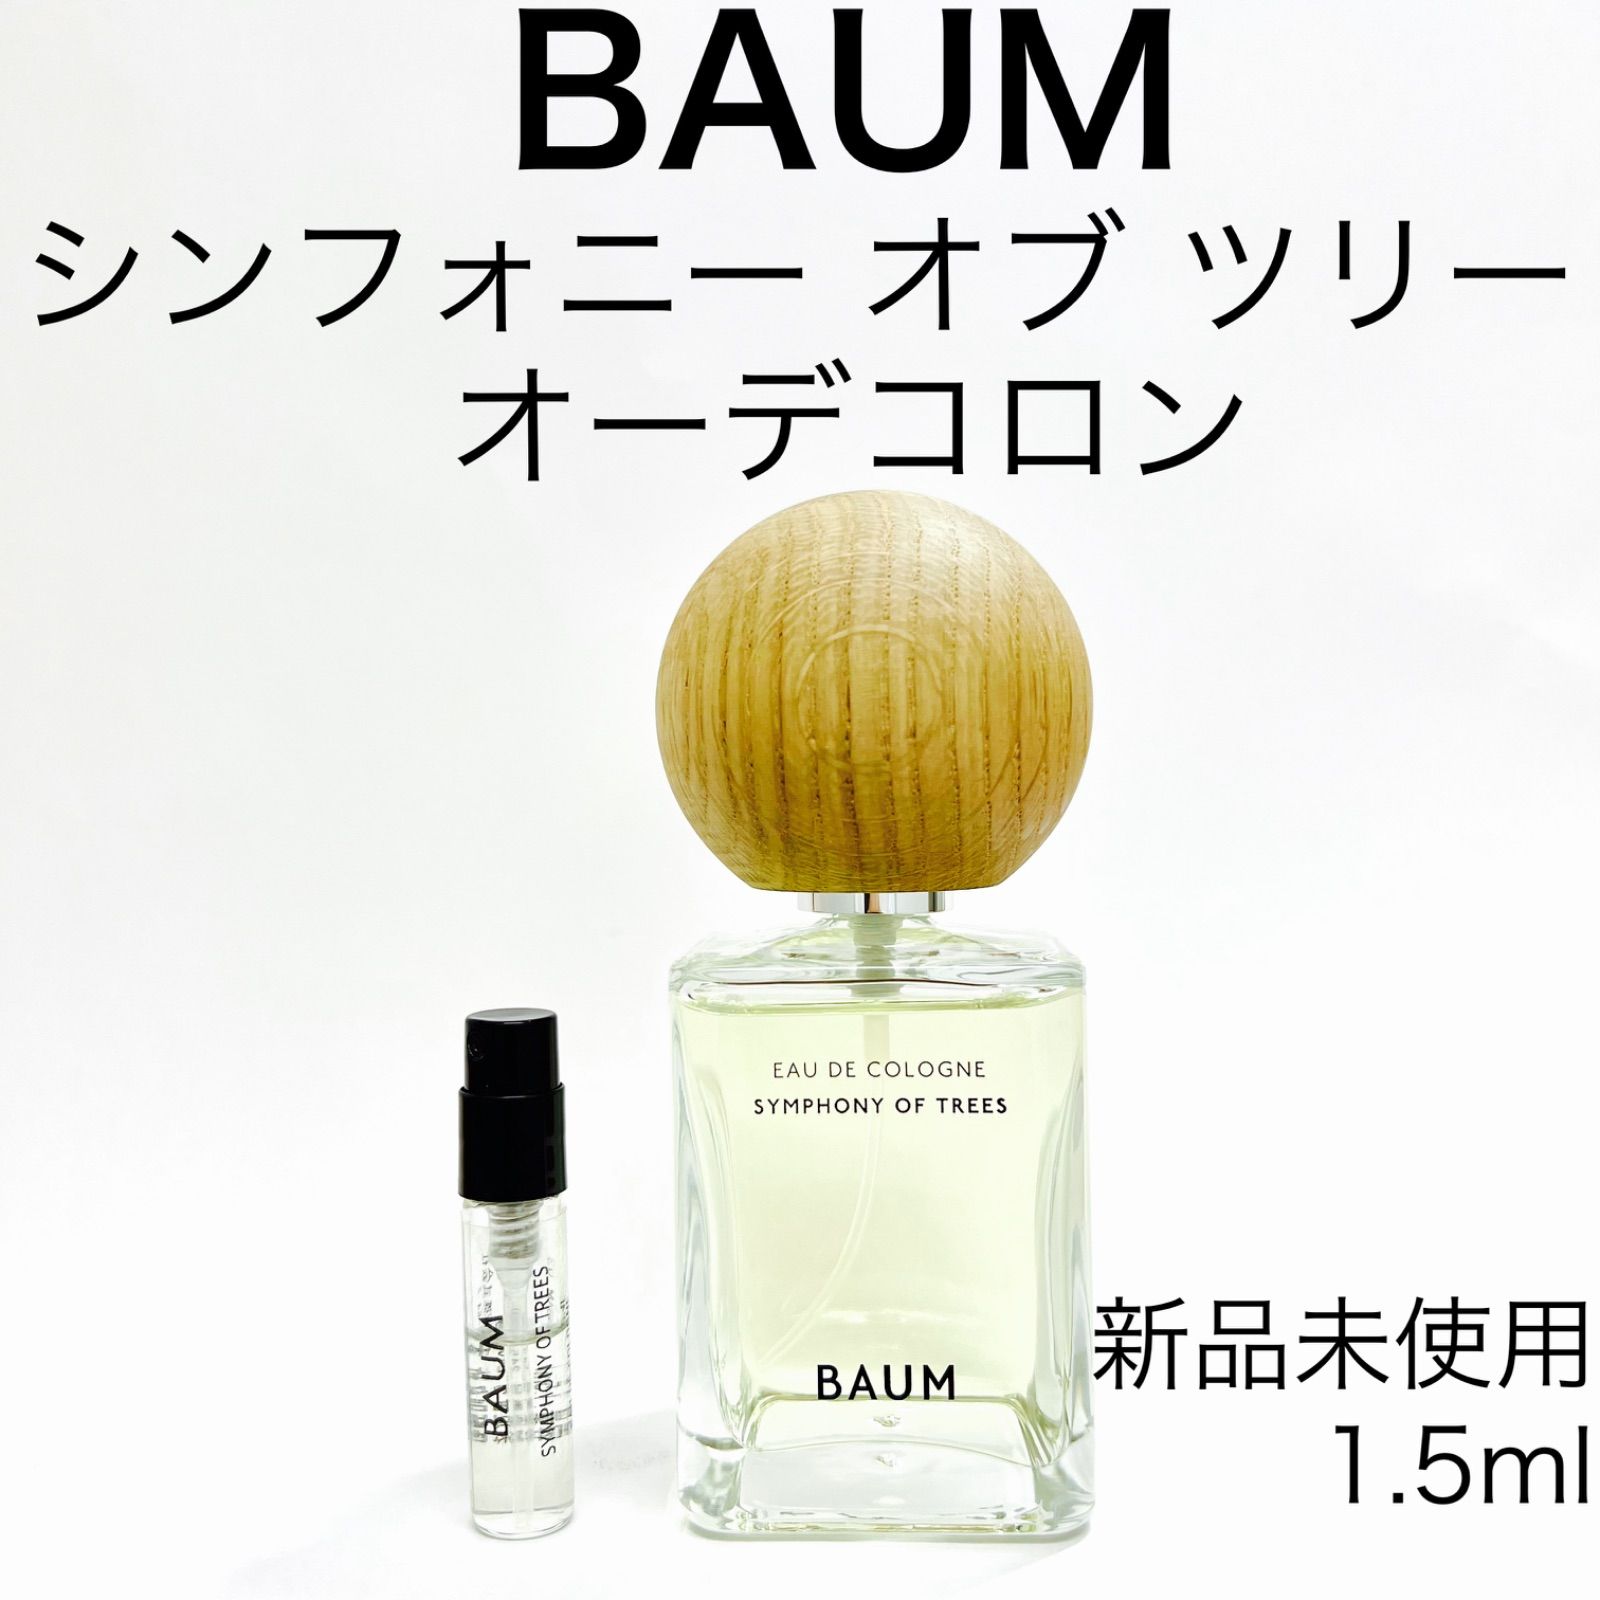 BAUM バウム オーデコロン 3 シンフォニーオブツリー 60ml 人気定番 